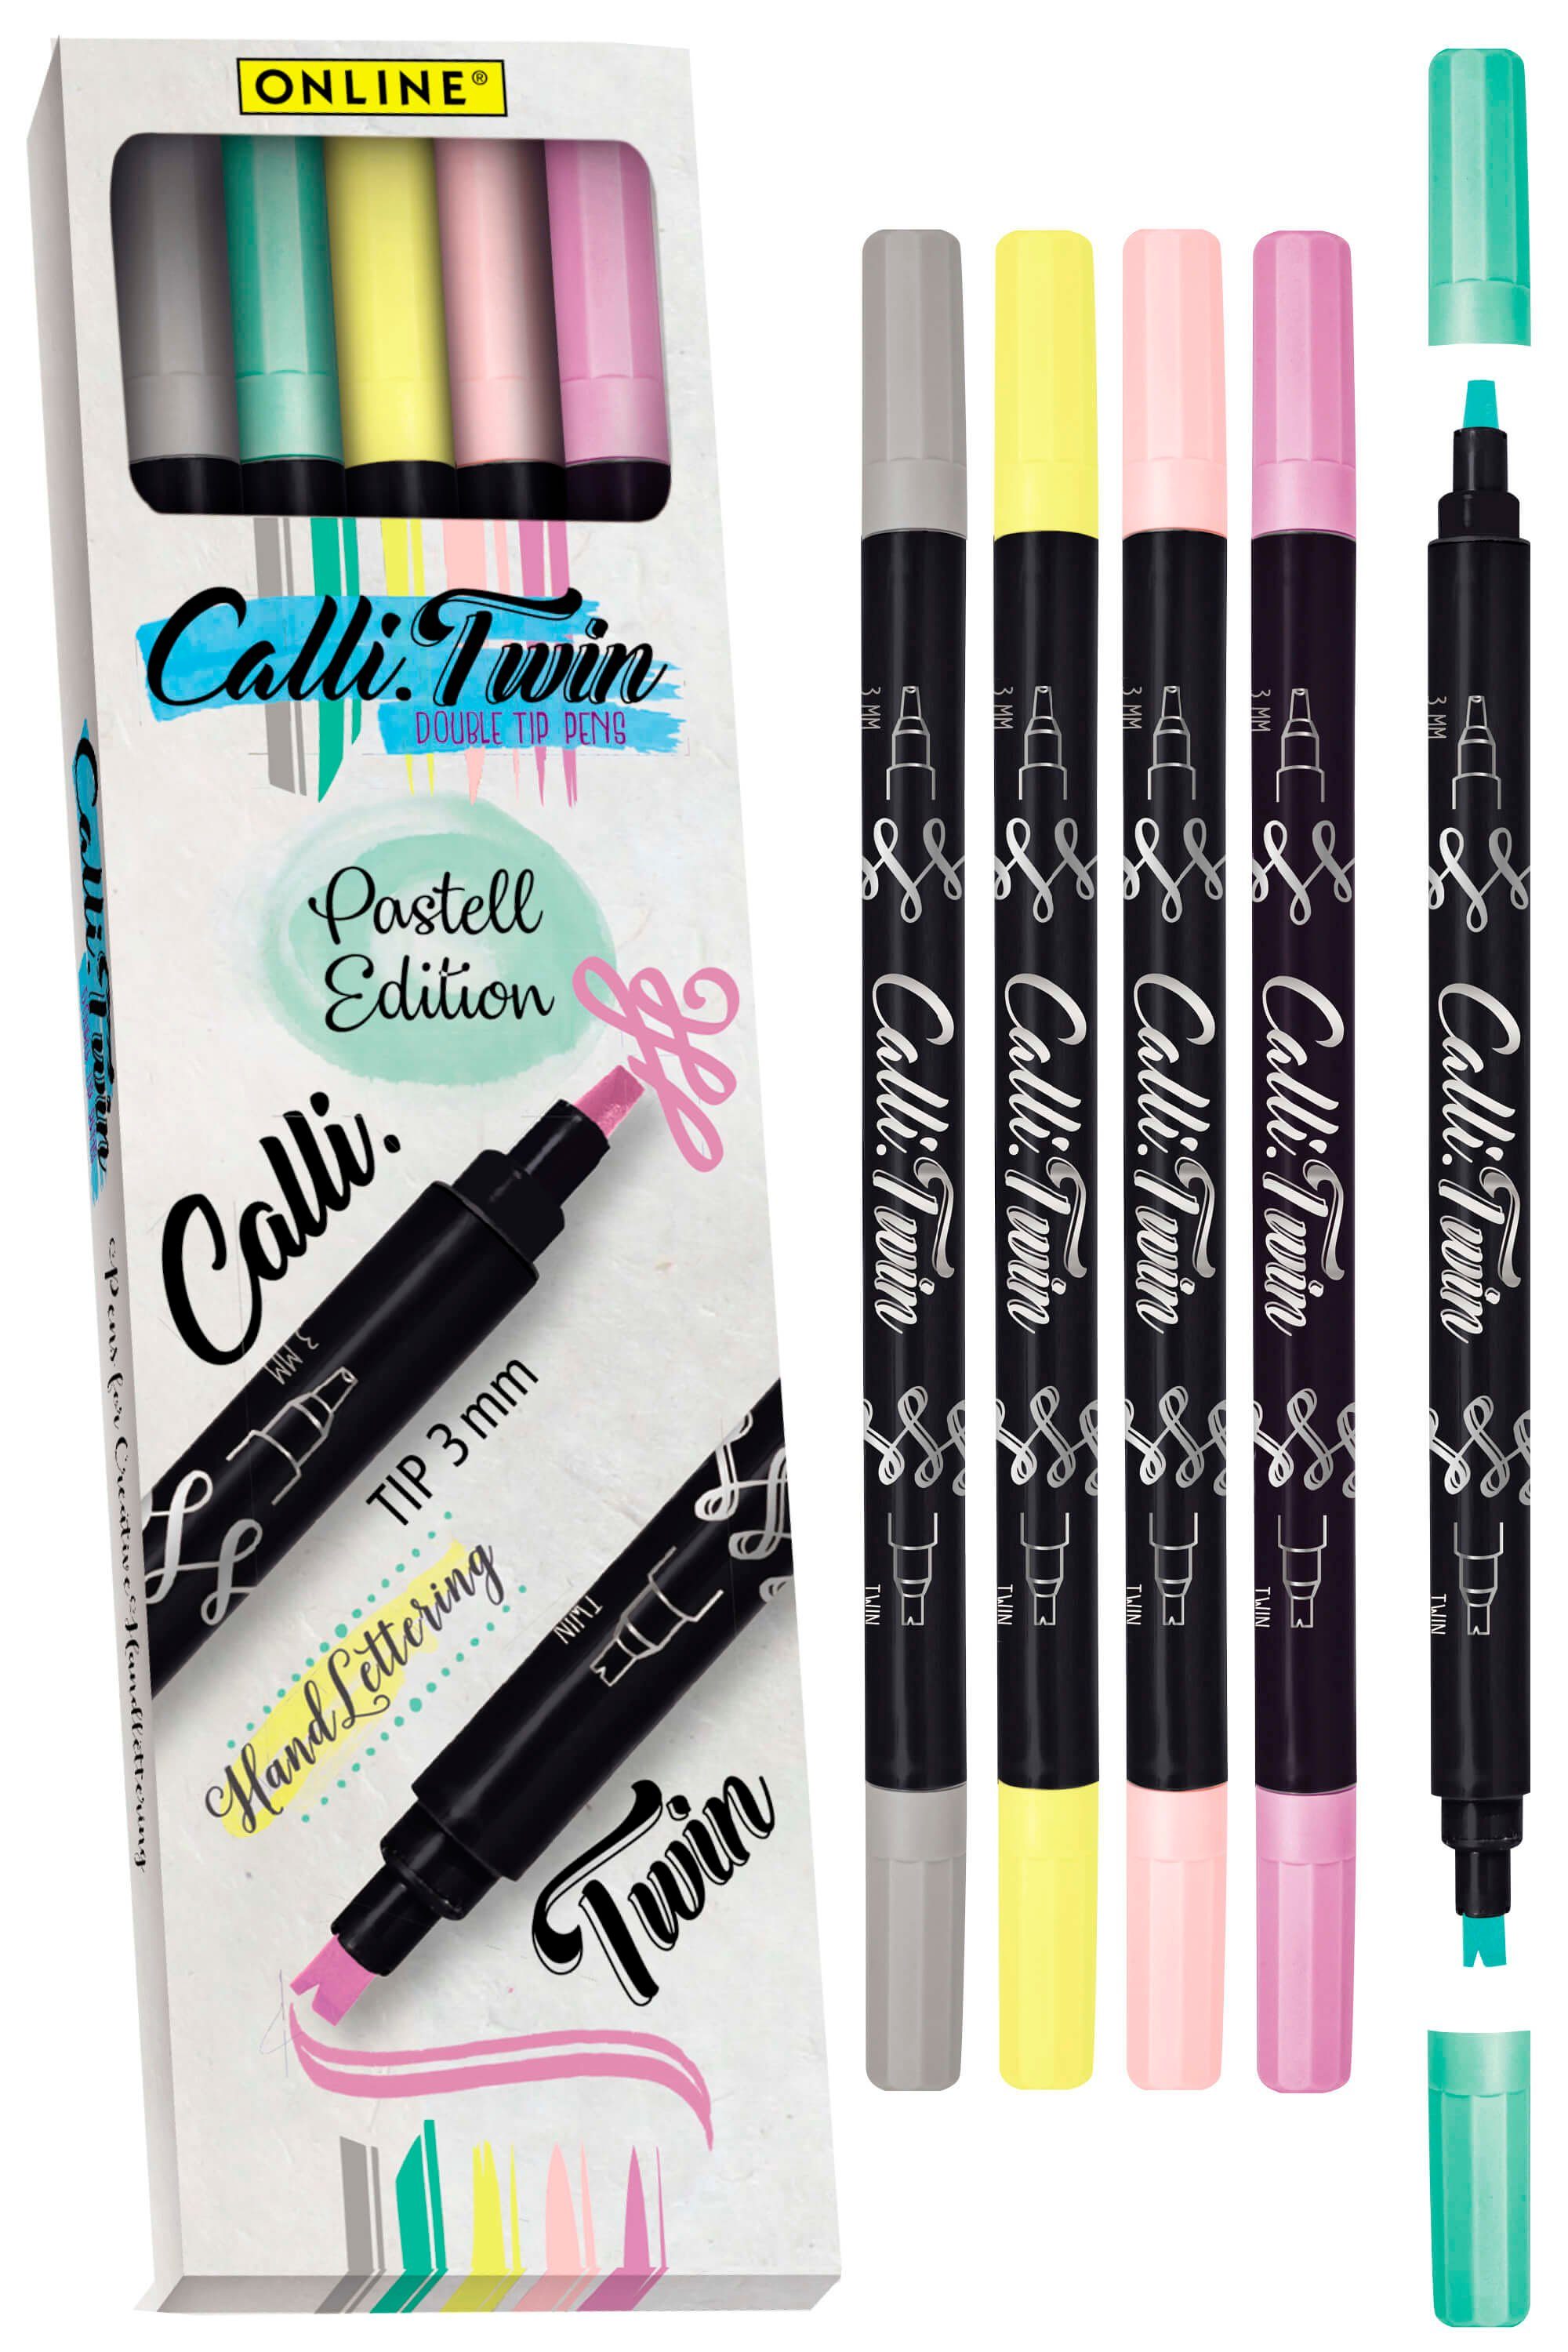 5x Handlettering Pen Pastel Spitzen Stifte Set, Pens, Brush bunte Online Calli.Twin, Fineliner verschiedene